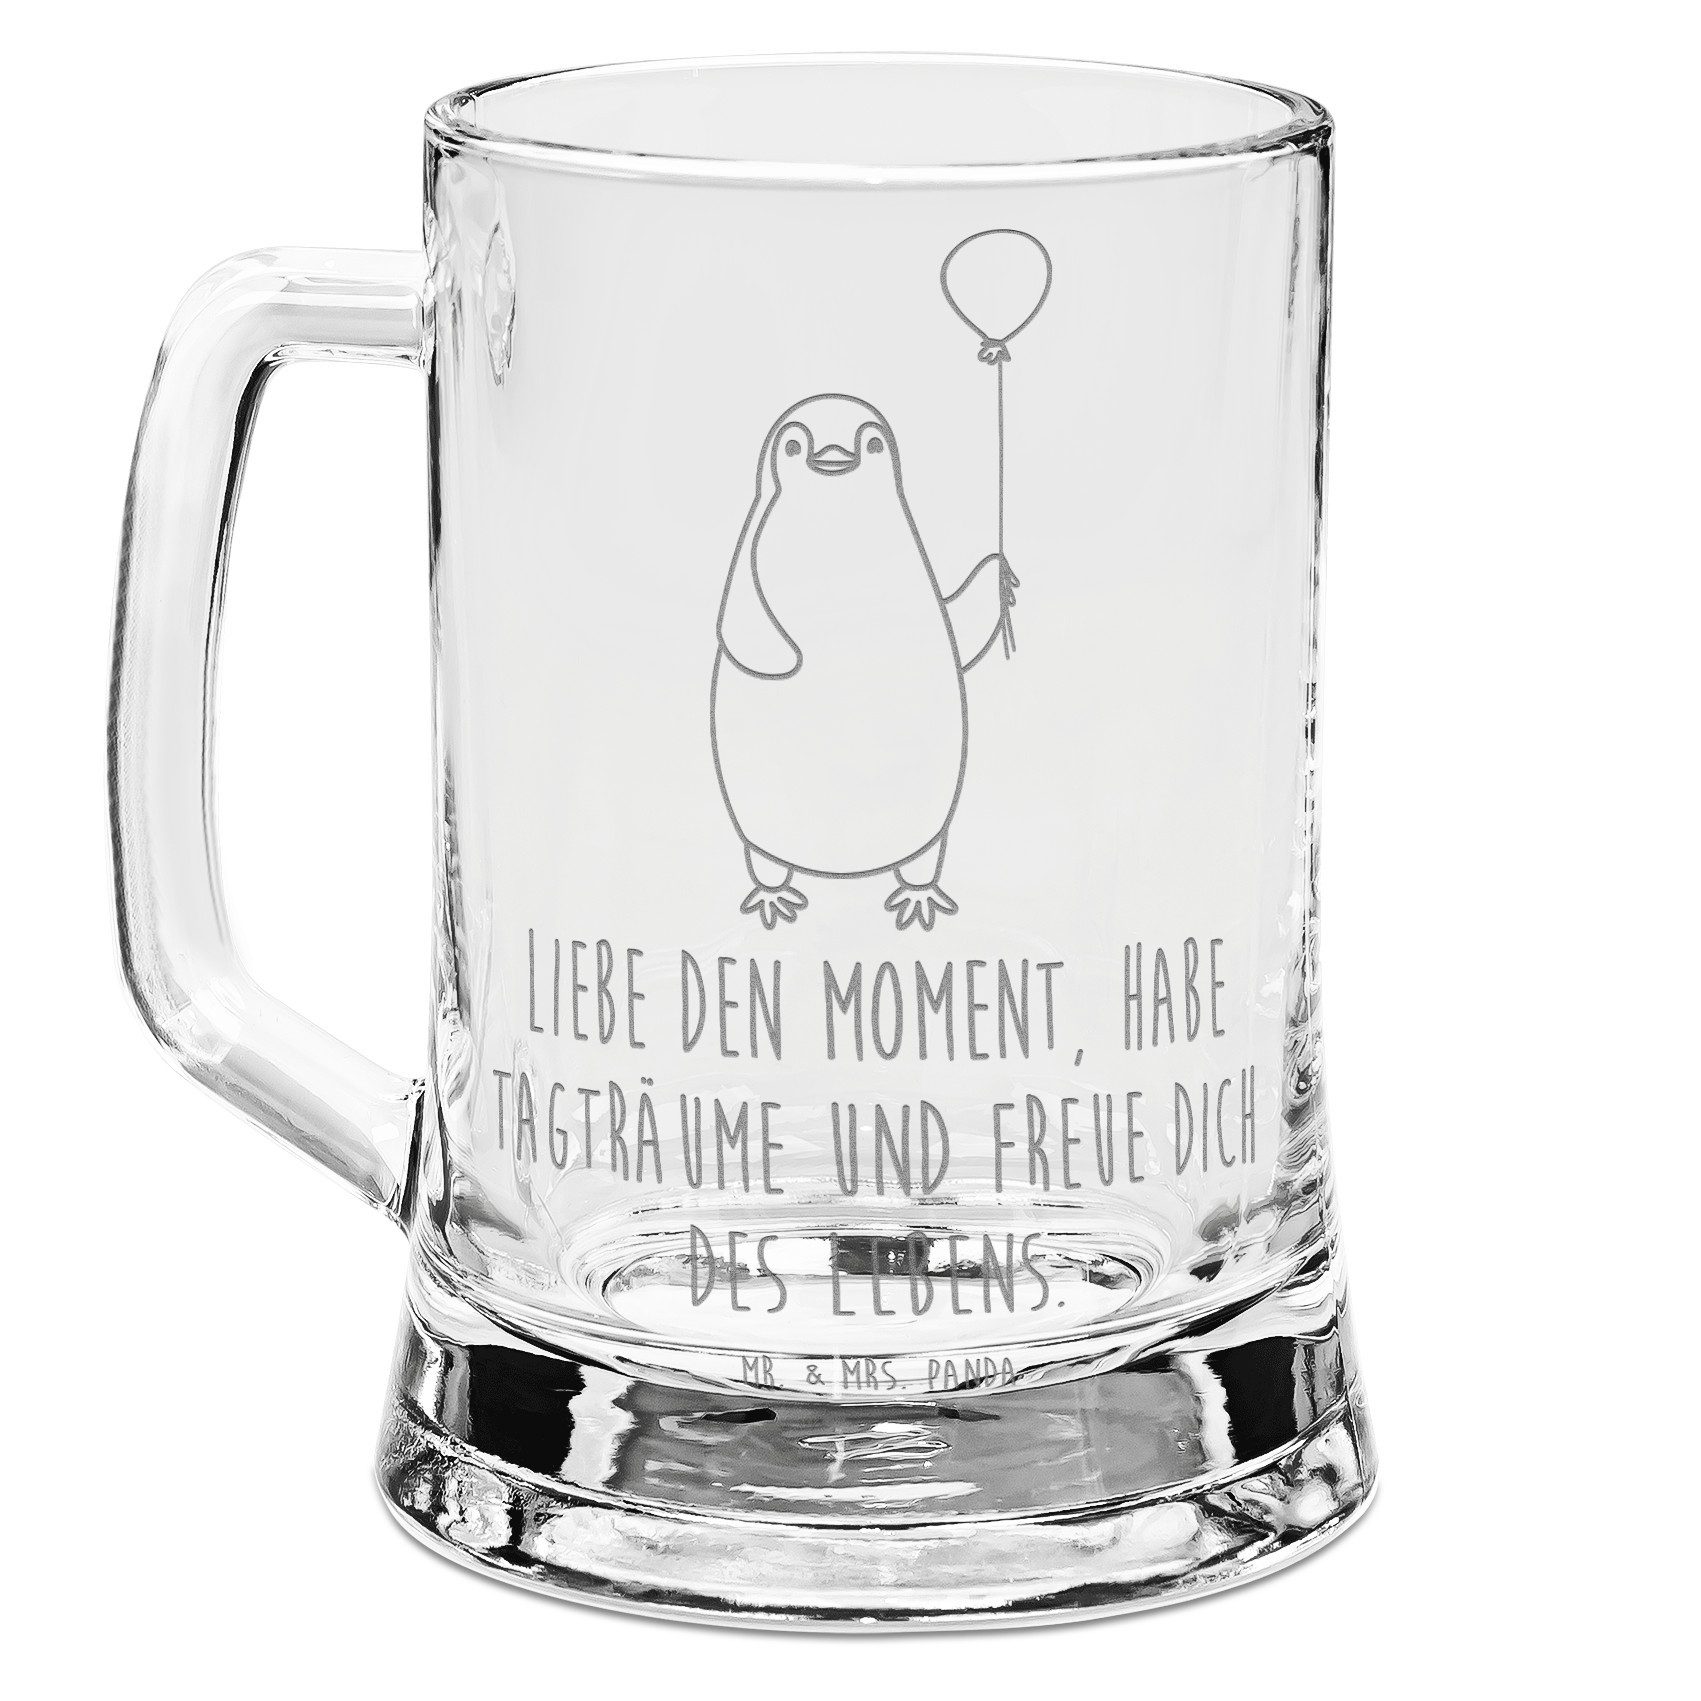 Mr. & Mrs. Panda Bierkrug Pinguin Luftballon - Transparent - Geschenk, beste Freundin, Bierkrug, Premium Glas, Auffällige Gravur